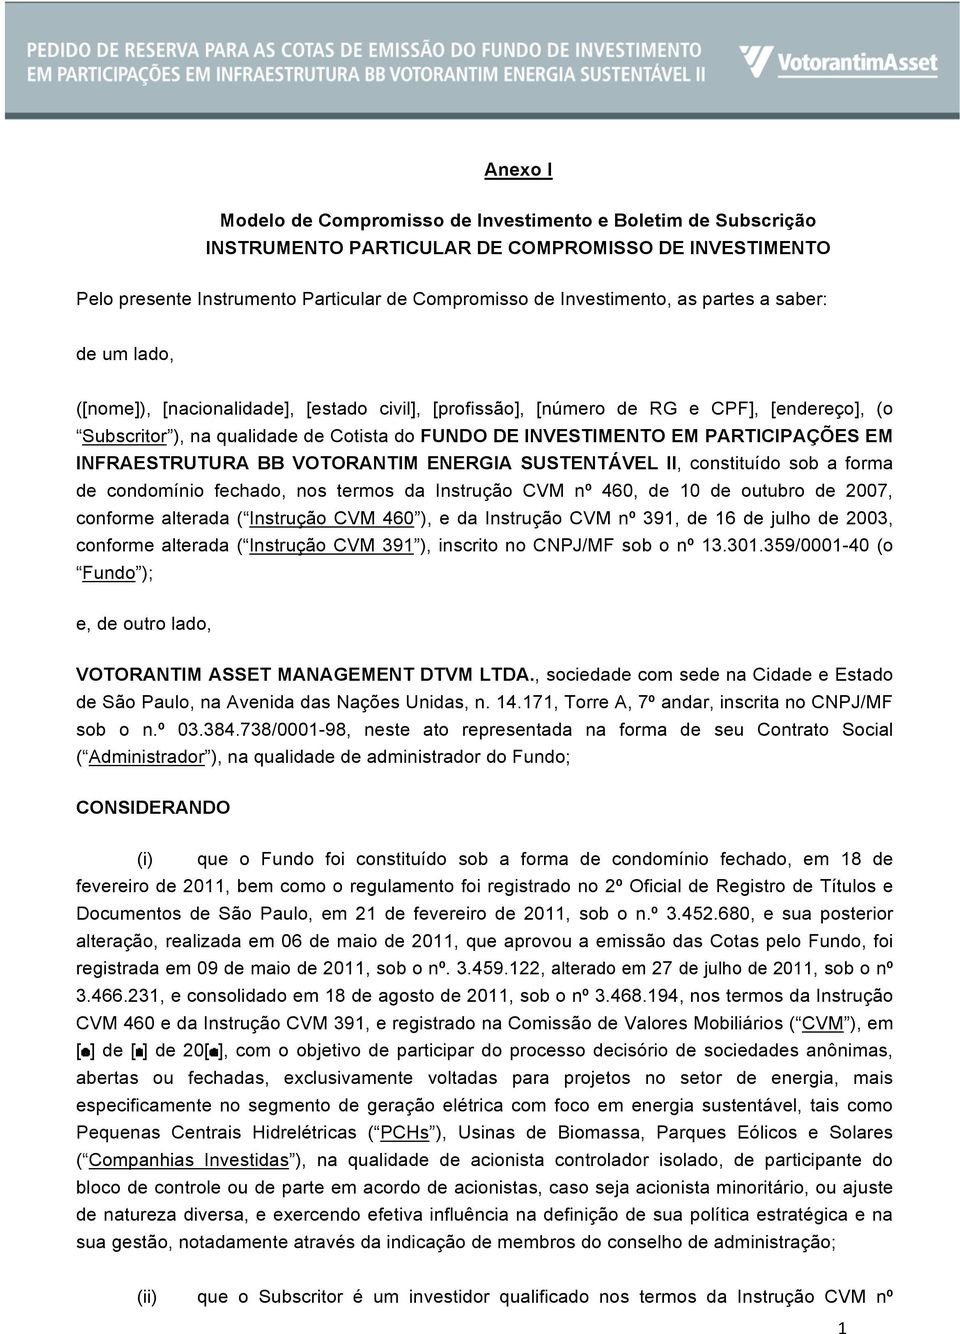 PARTICIPAÇÕES EM INFRAESTRUTURA BB VOTORANTIM ENERGIA SUSTENTÁVEL II, constituído sob a forma de condomínio fechado, nos termos da Instrução CVM nº 460, de 10 de outubro de 2007, conforme alterada (